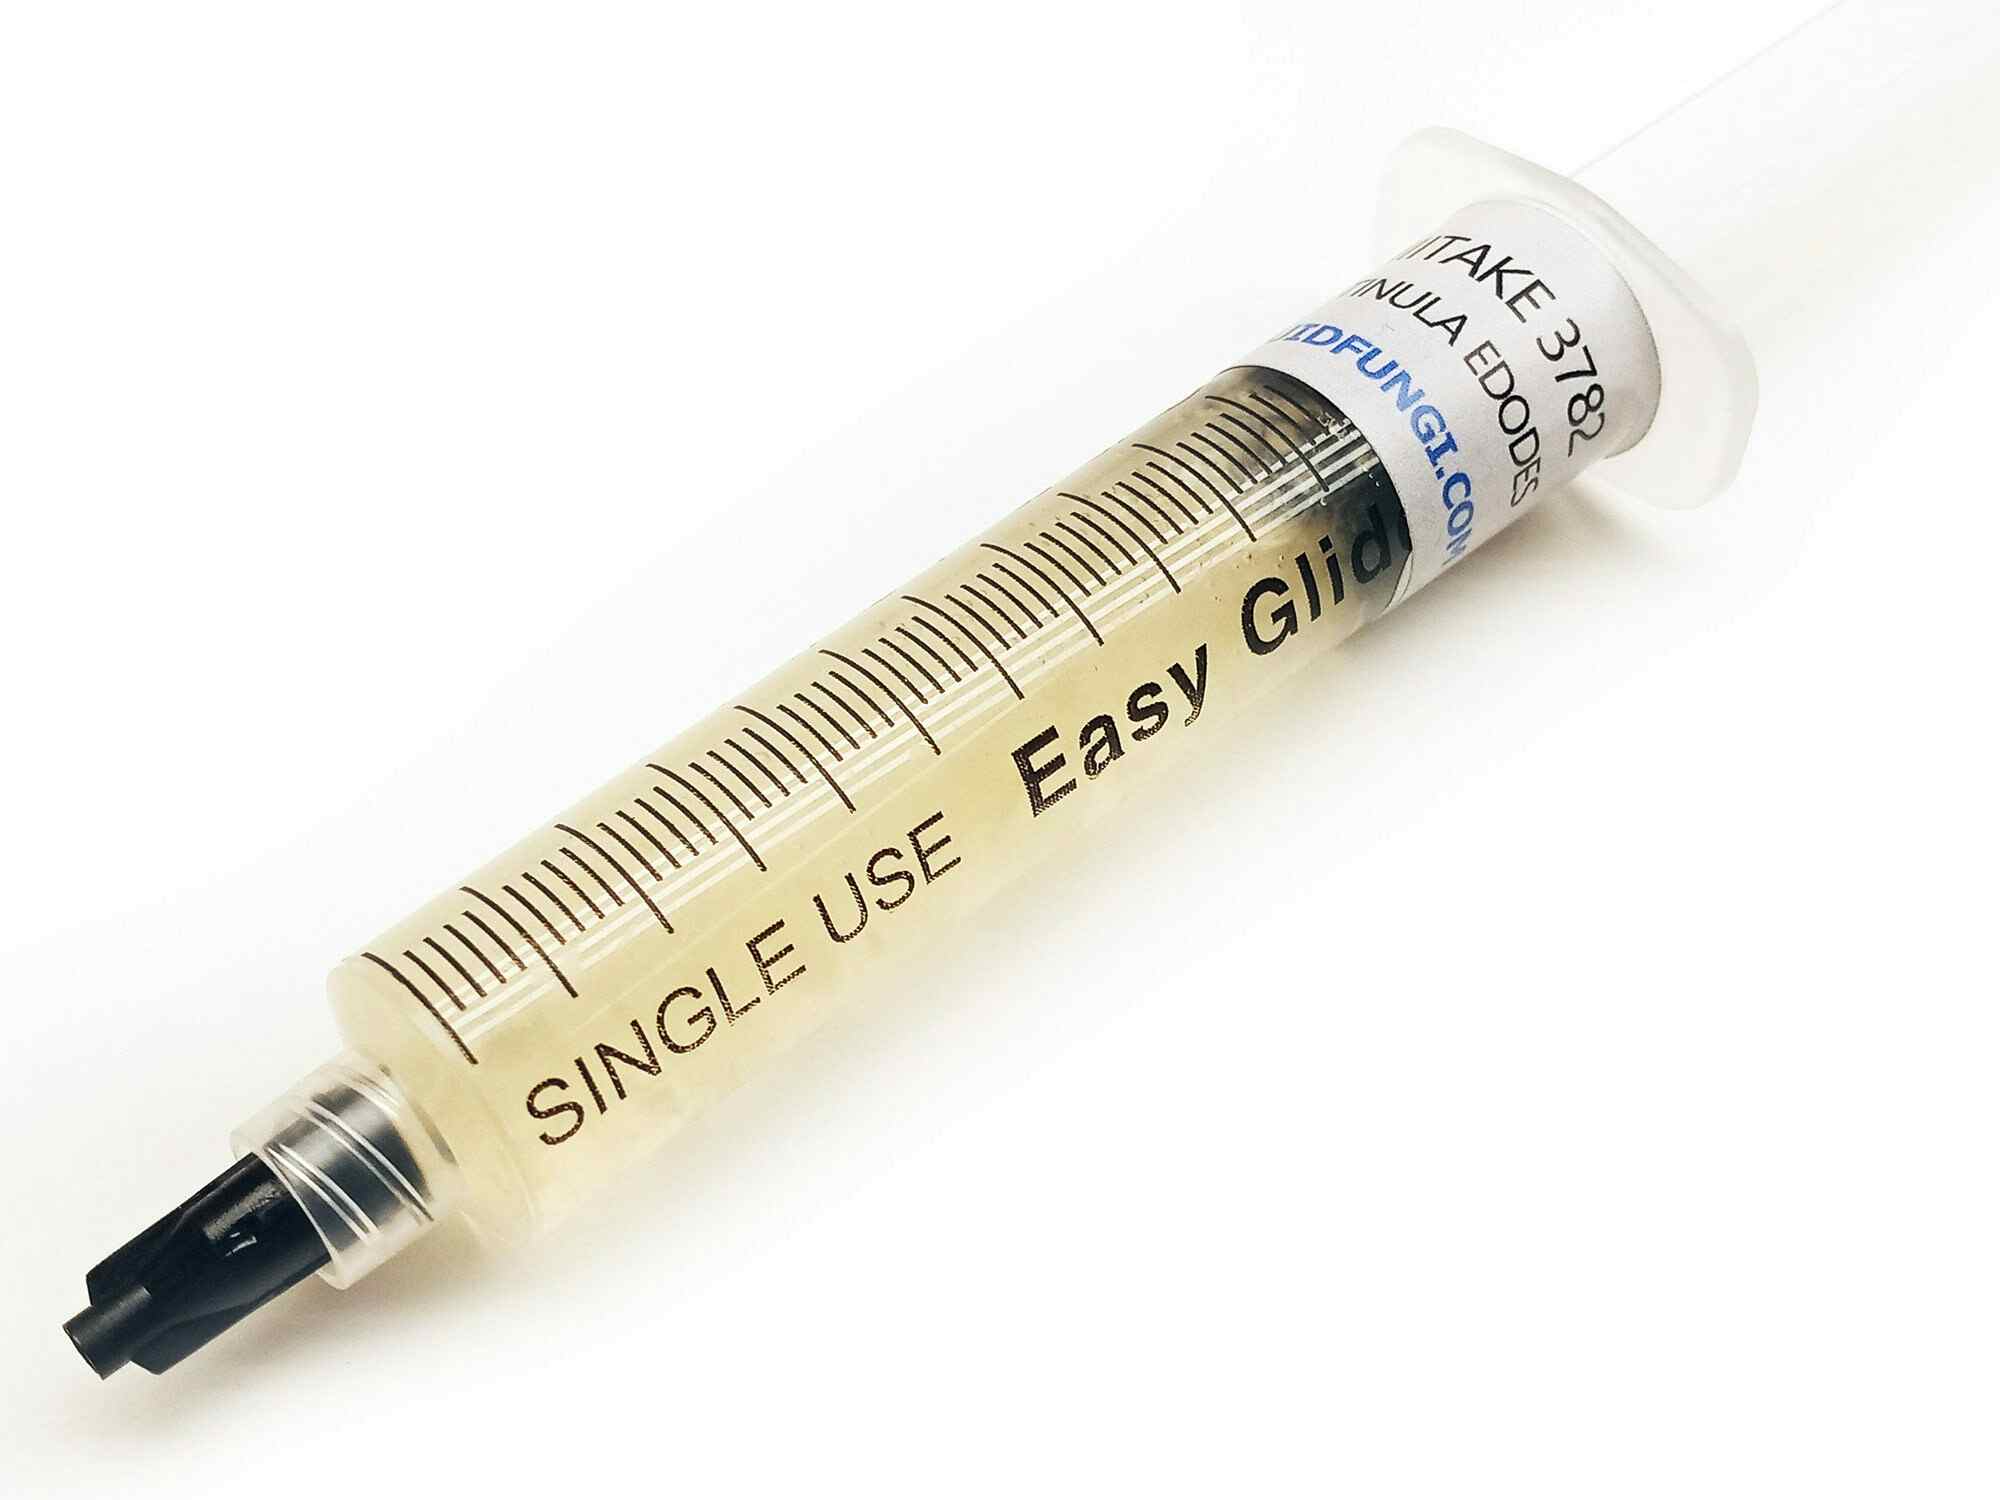 Shiitake 3782 Liquid Culture Syringe